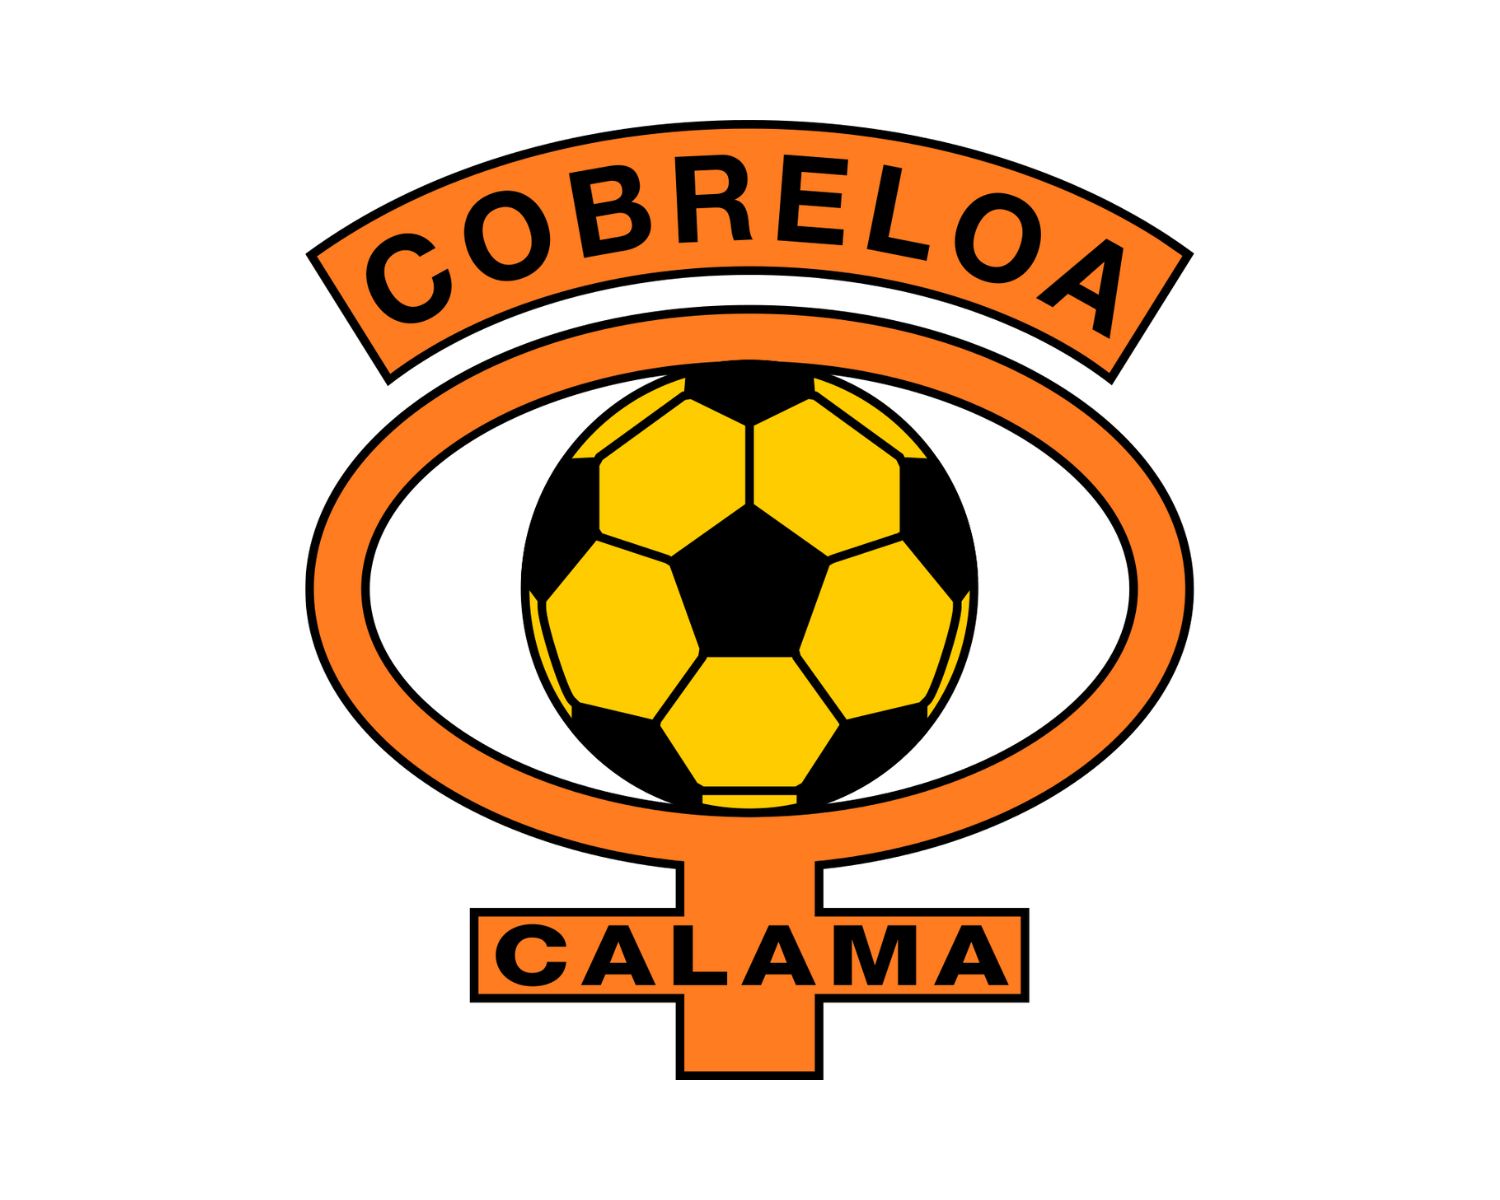 cobreloa-21-football-club-facts